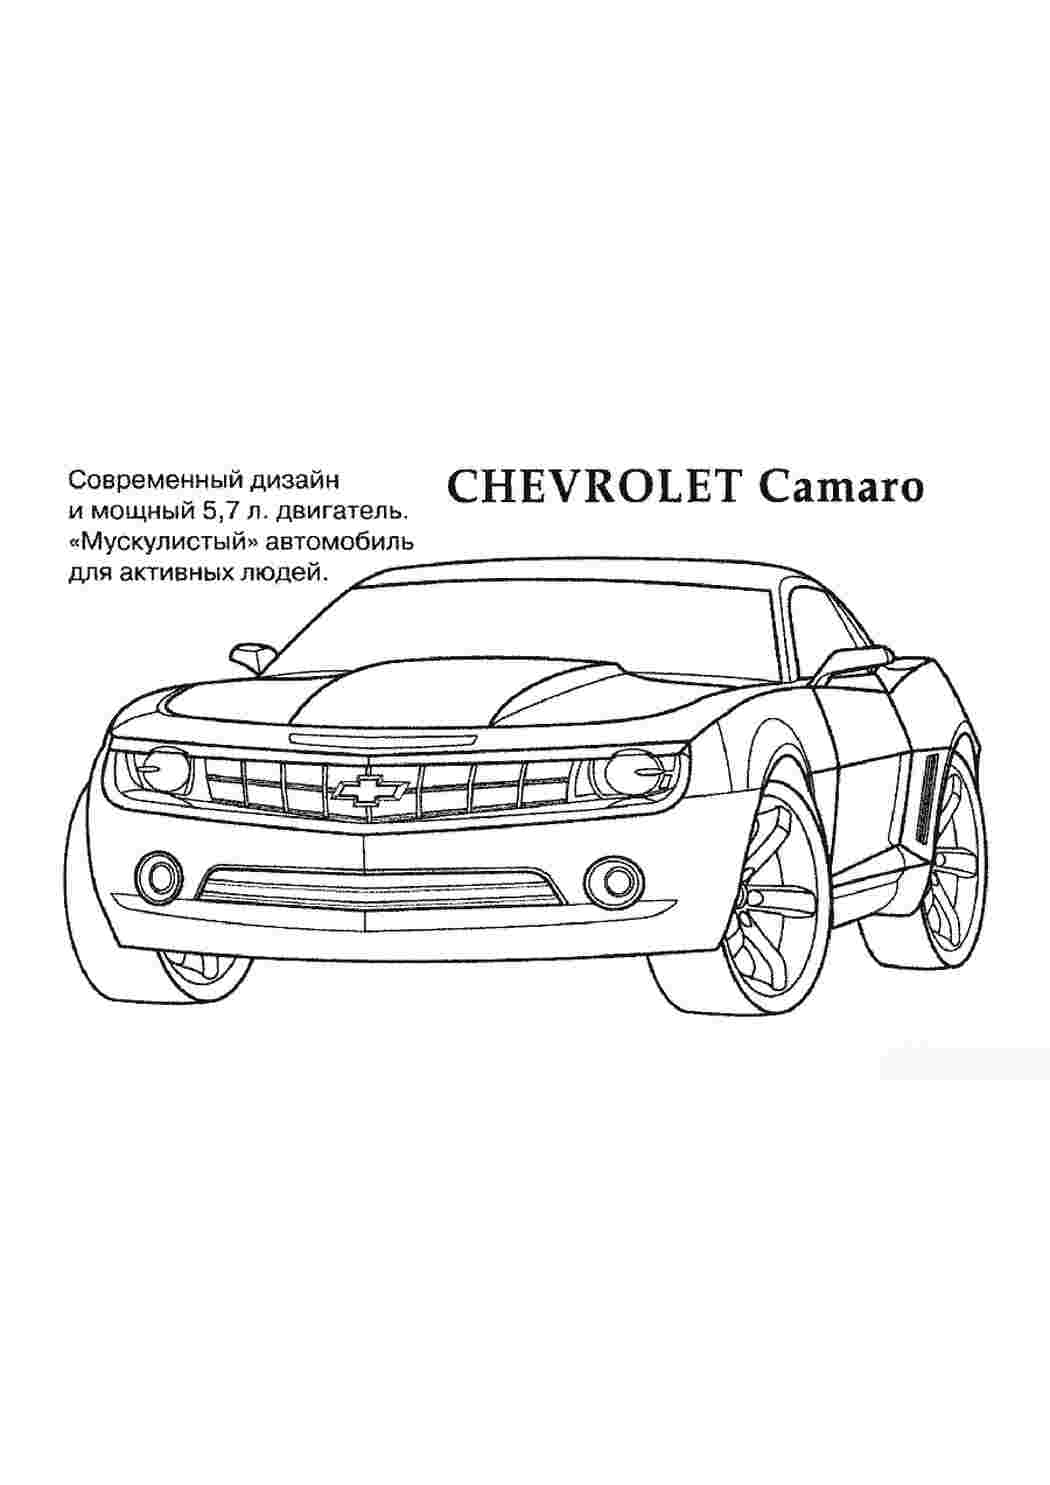 Chevrolet Lacetti 1.4 (2009 г. в.)